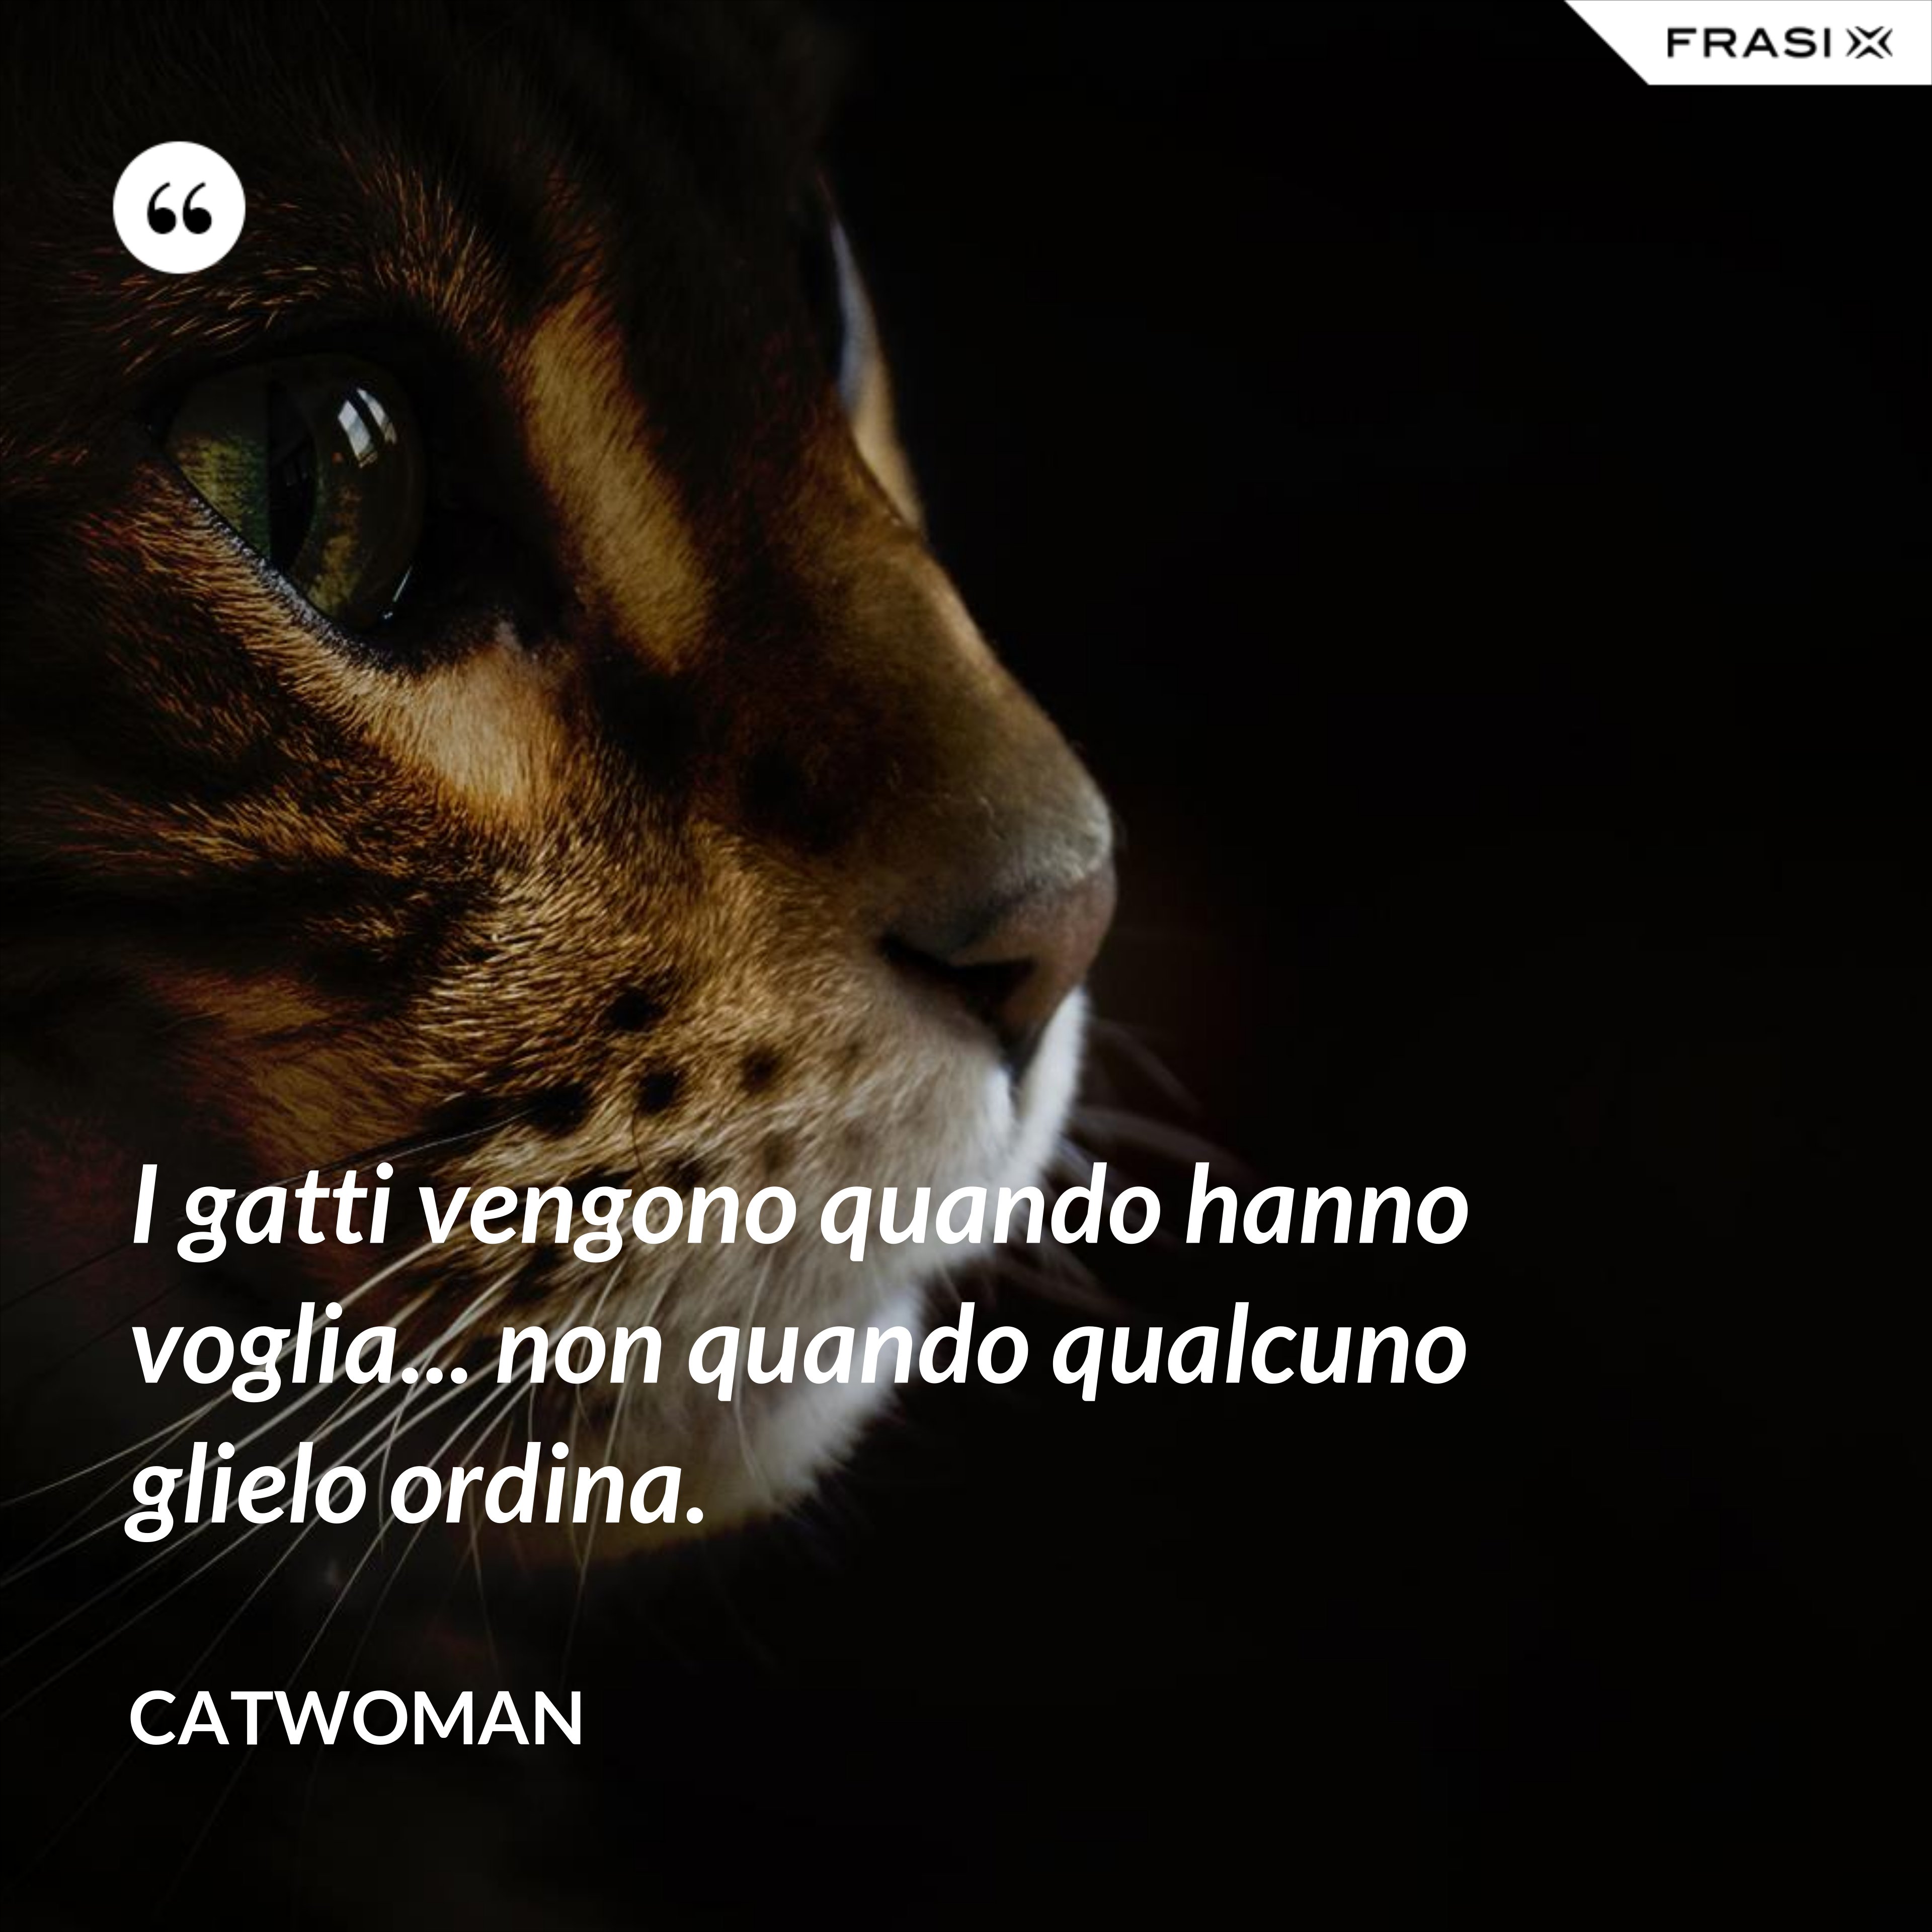 I gatti vengono quando hanno voglia... non quando qualcuno glielo ordina. - Catwoman